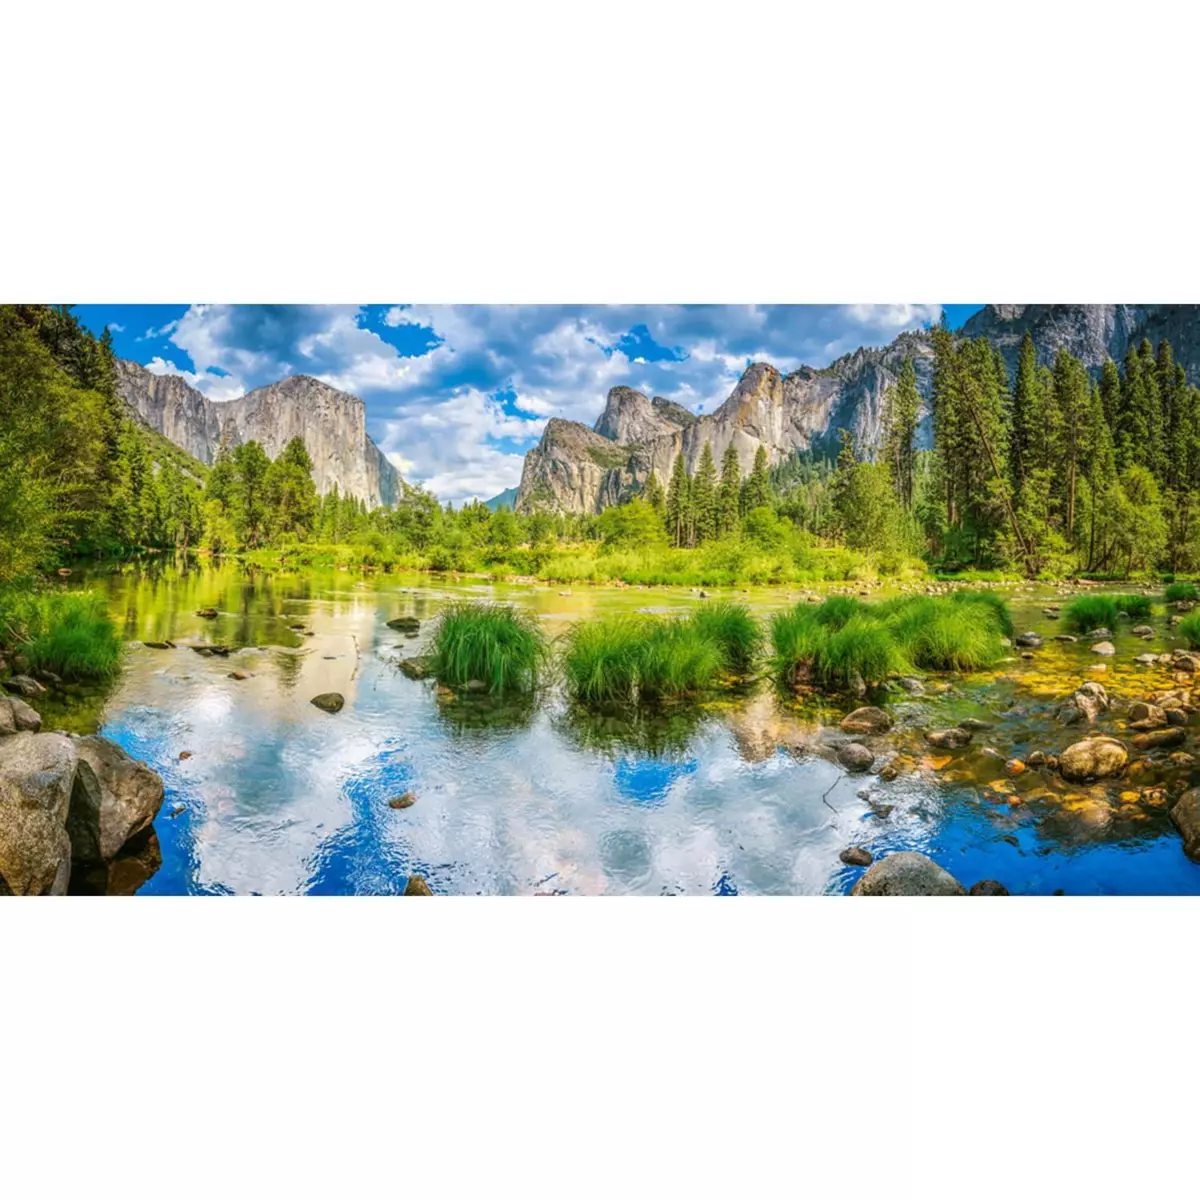 Castorland Puzzle 4000 pièces : Vallée de Yosemite , USA